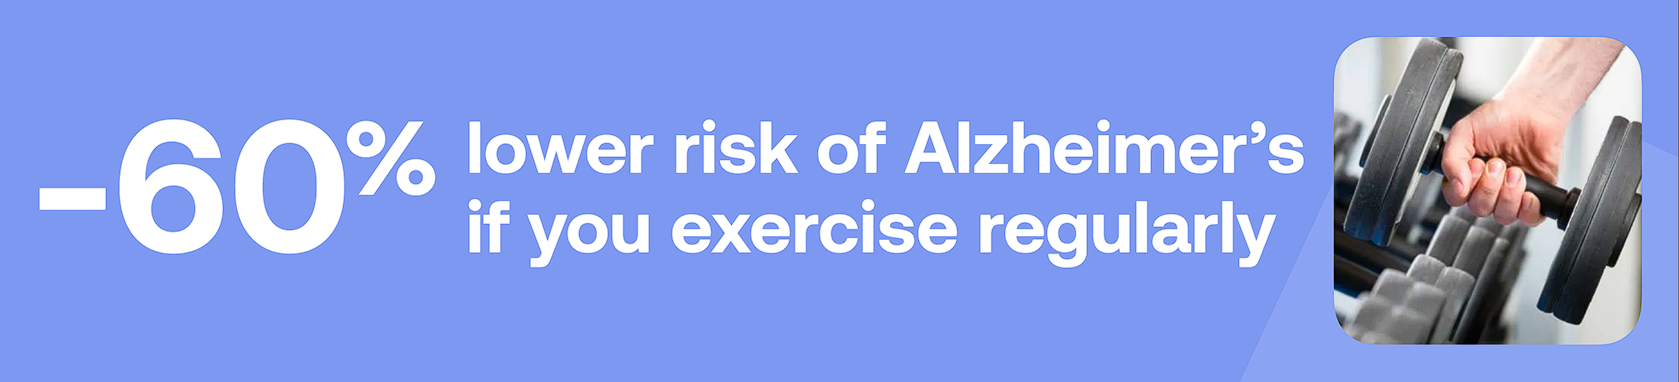 -60% lower risk of Alzheimer's if you exercise regulary